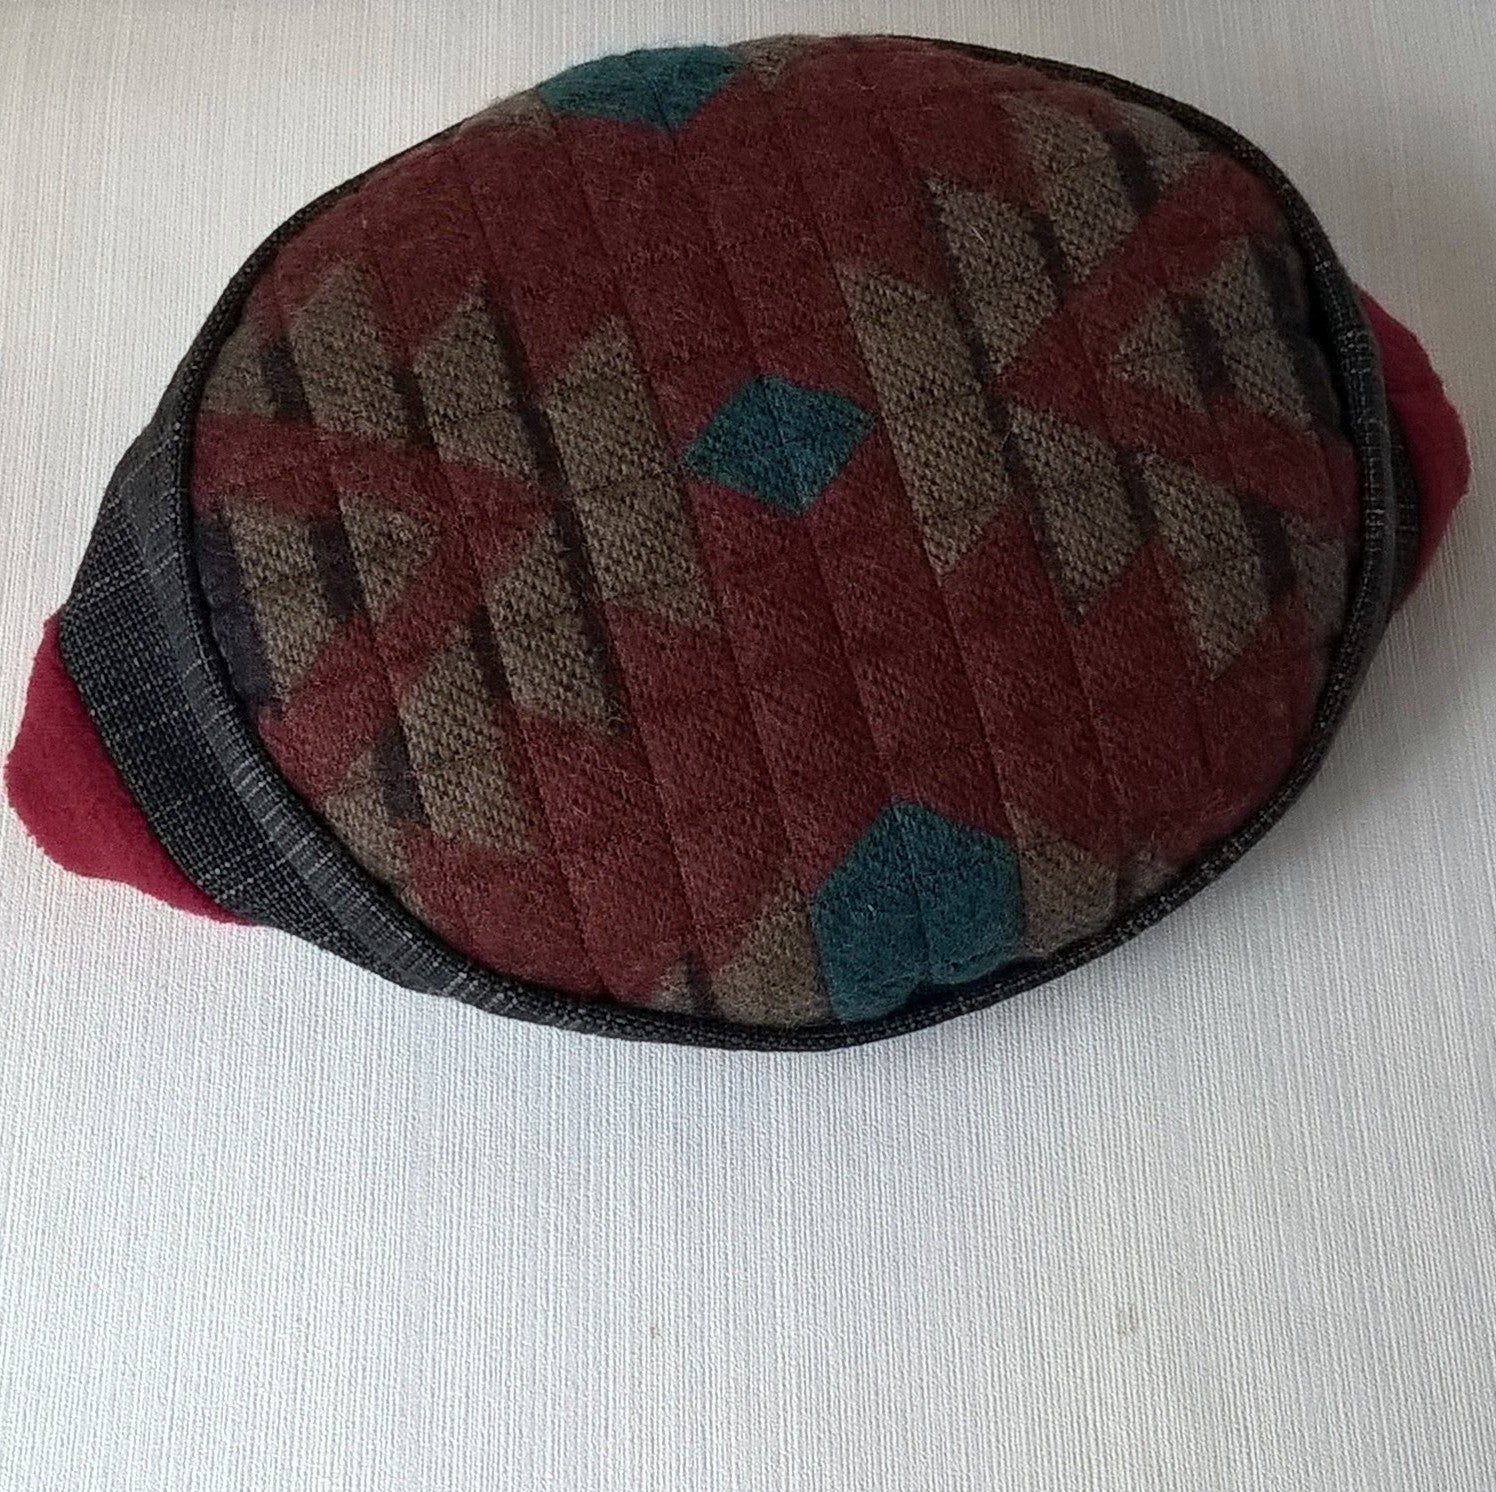 Aztec patterned tip of hat